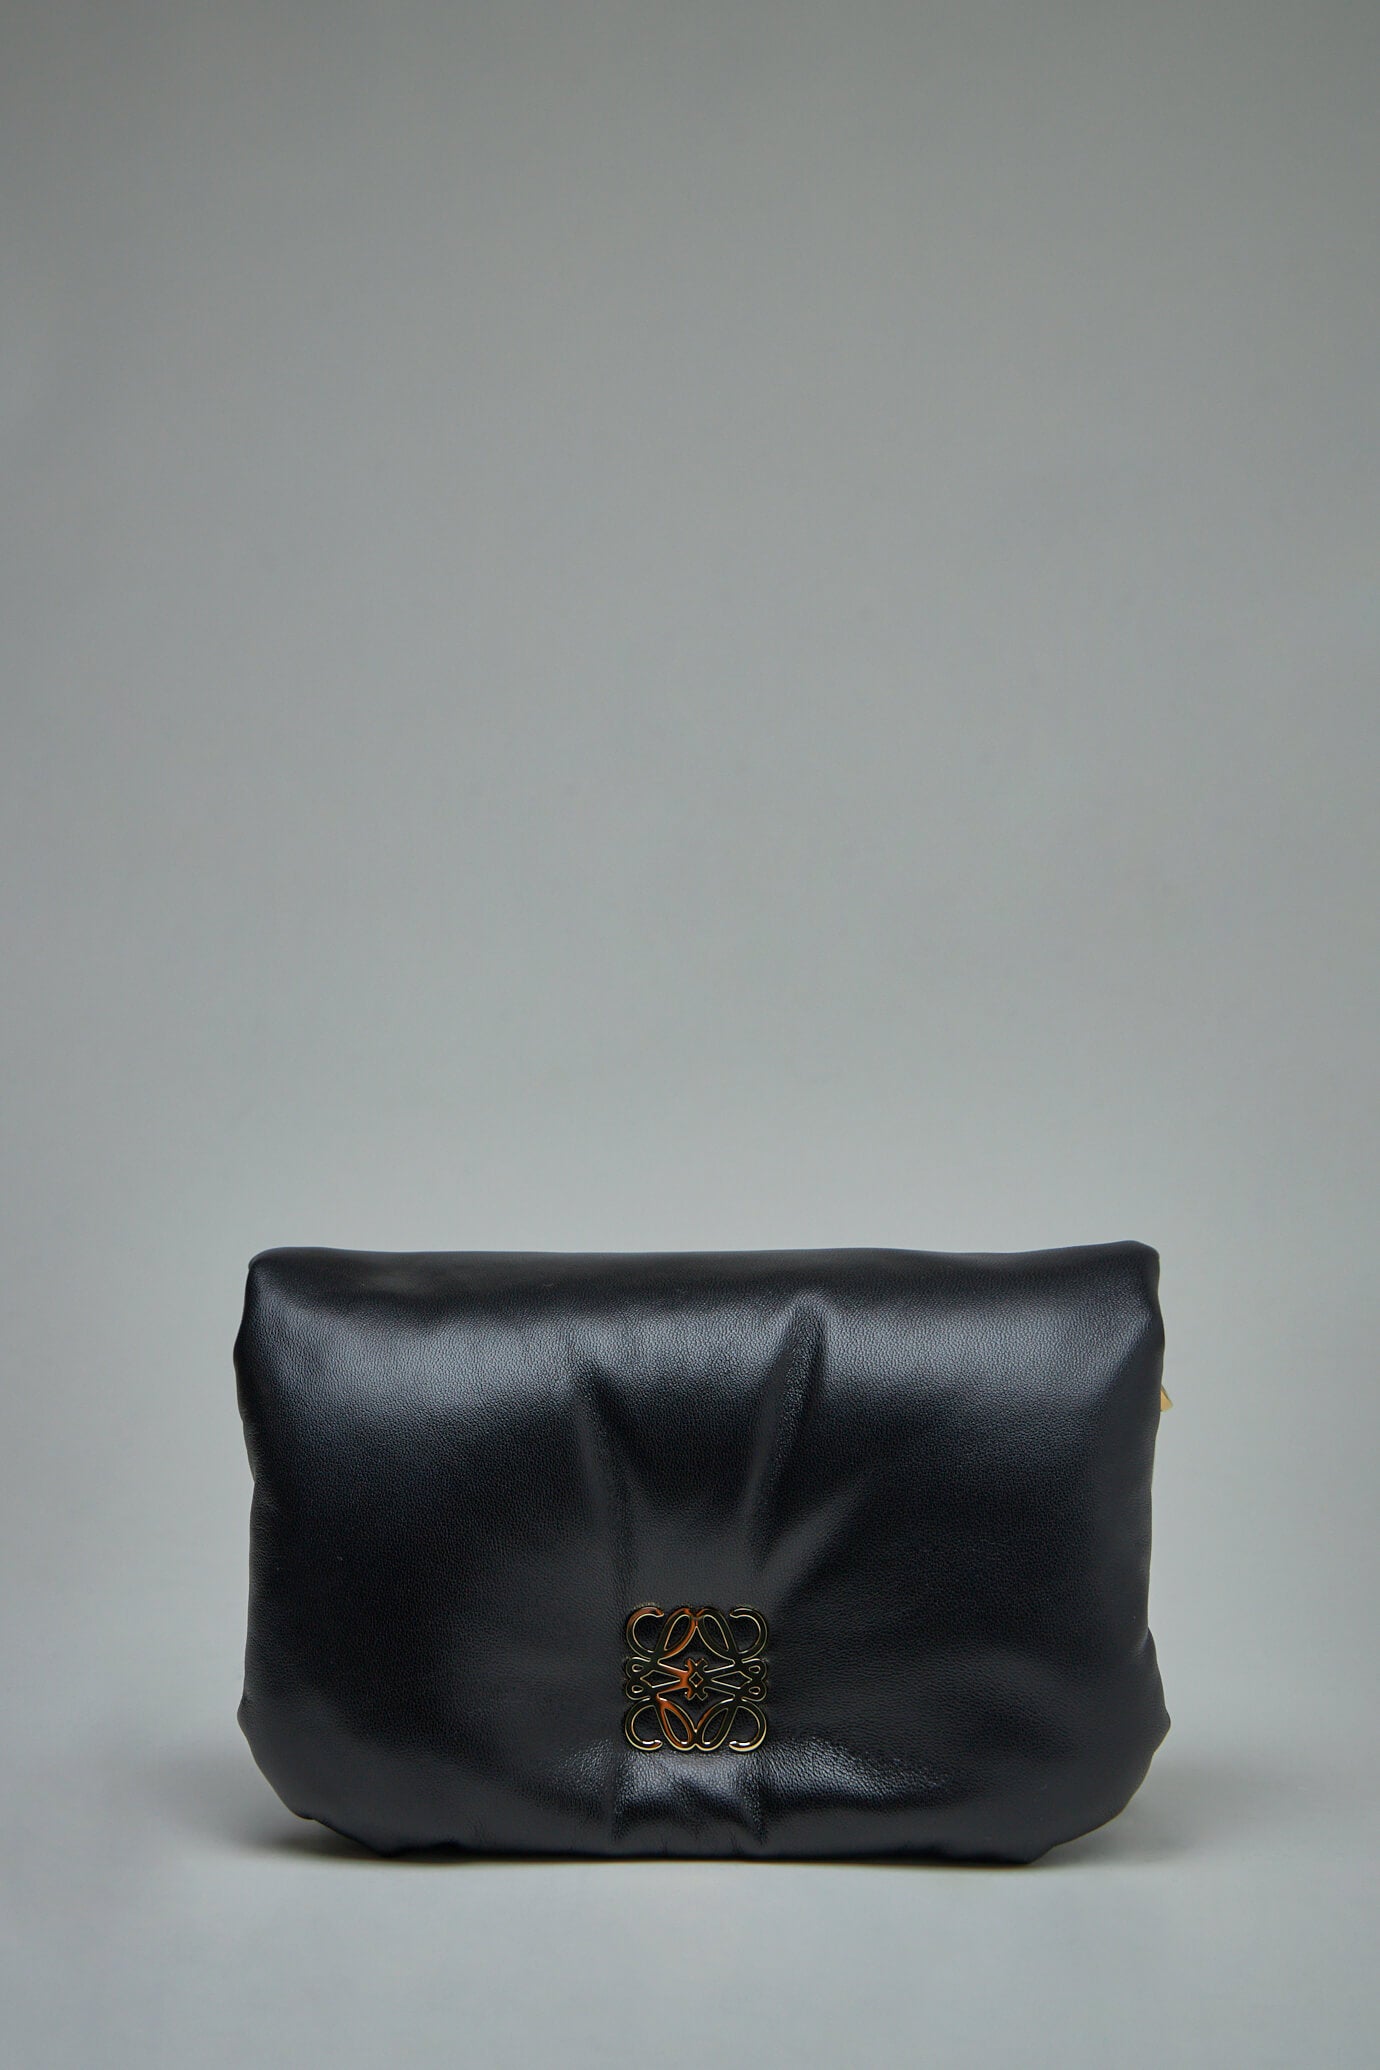 Loewe - Goya Leather Backpack - Black